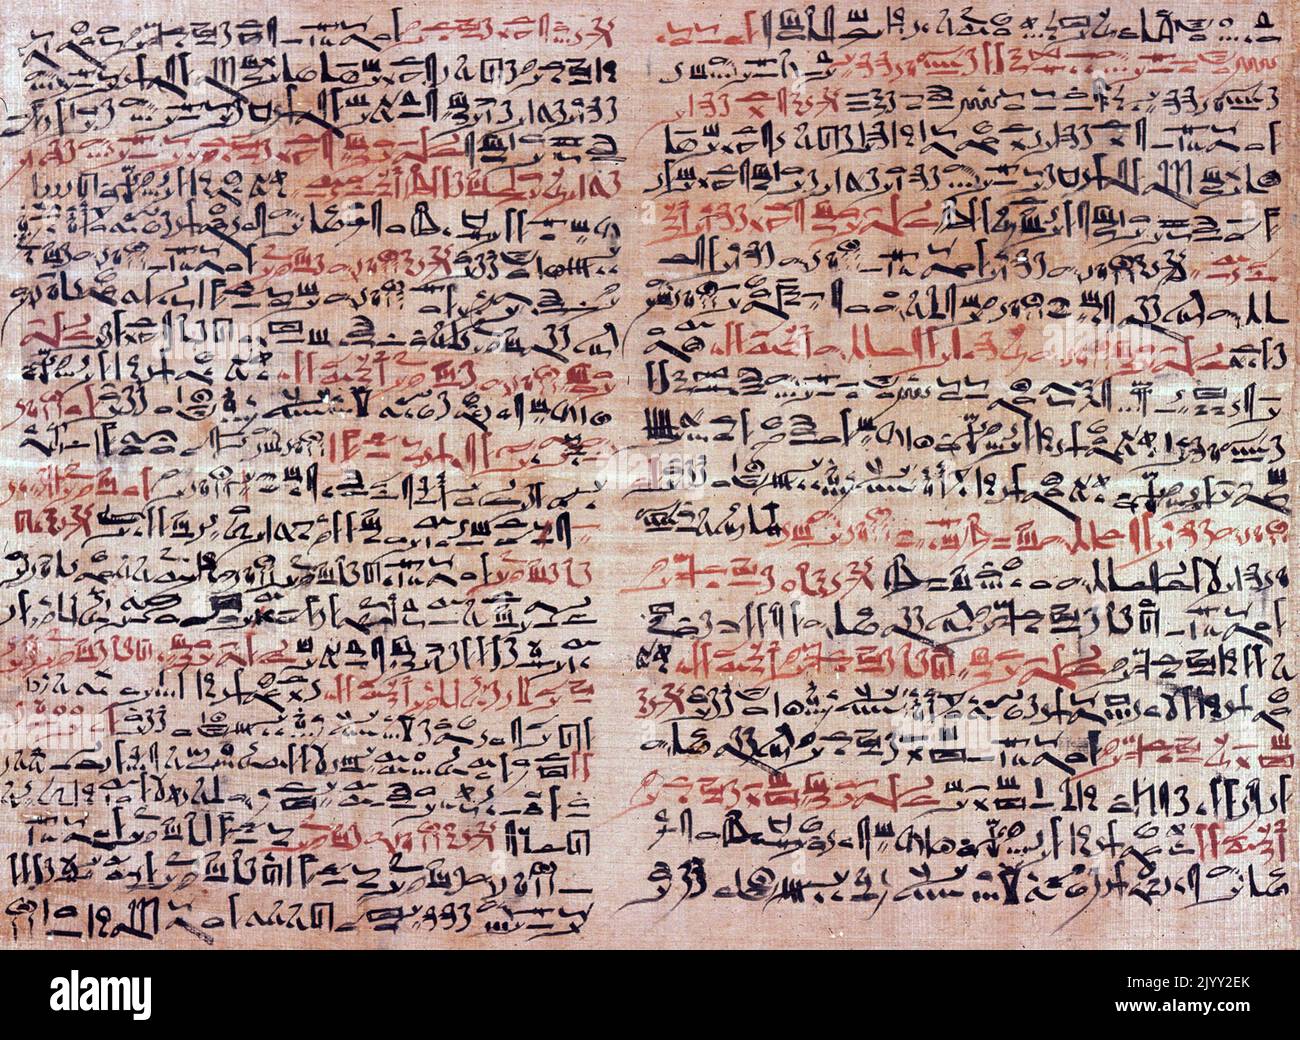 Der Edwin Smith Papyrus ist ein altägyptischer medizinischer Text, benannt nach dem Händler, der ihn 1862 kaufte, und der ältesten bekannten chirurgischen Abhandlung über Trauma. Dieses Dokument, das möglicherweise ein Handbuch der Militäroperation war, beschreibt 48 Fälle von Verletzungen, Brüchen, Wunden, Verwerfungen und Tumoren. Es stammt aus den Dynastien 16-17 der zweiten Zwischenperiode im alten Ägypten, c. 1600 V. CHR. Stockfoto